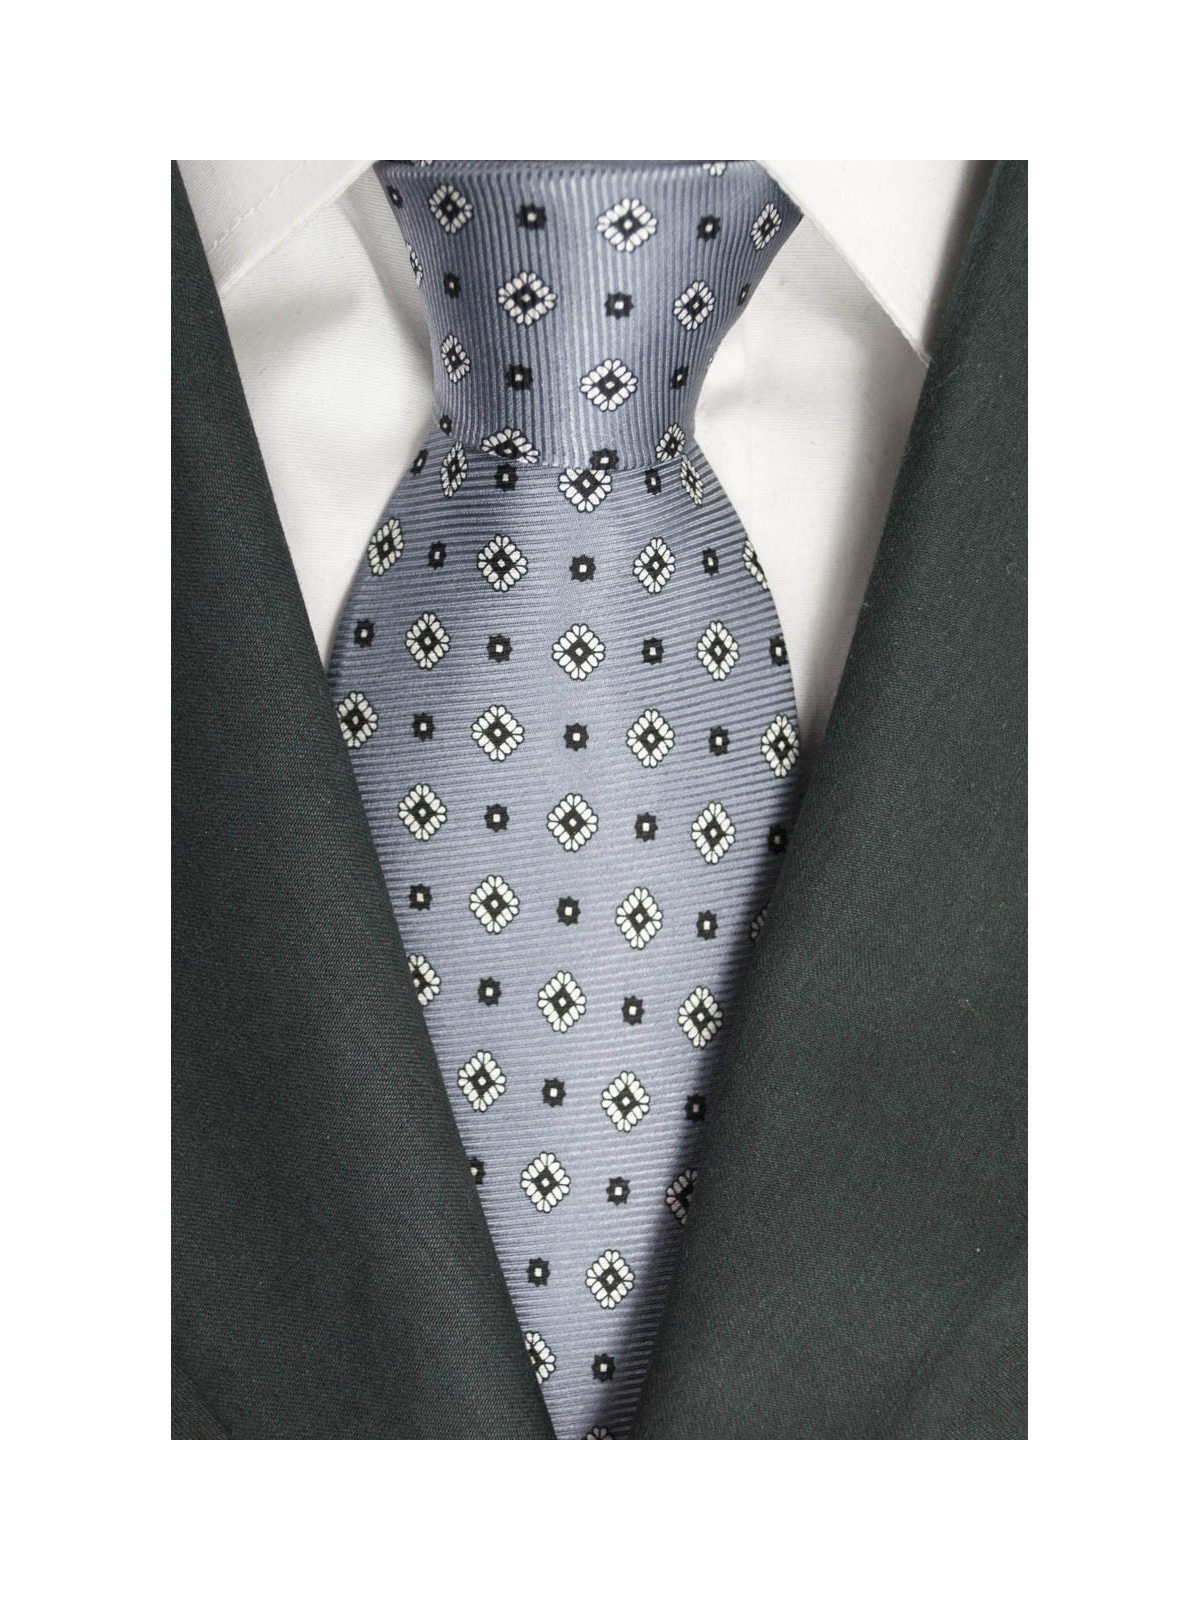 Krawatte Grau mit Kleinen Zeichnungen in Schwarz und Weiß - Laura Biagiotti - 100% Reine Seide